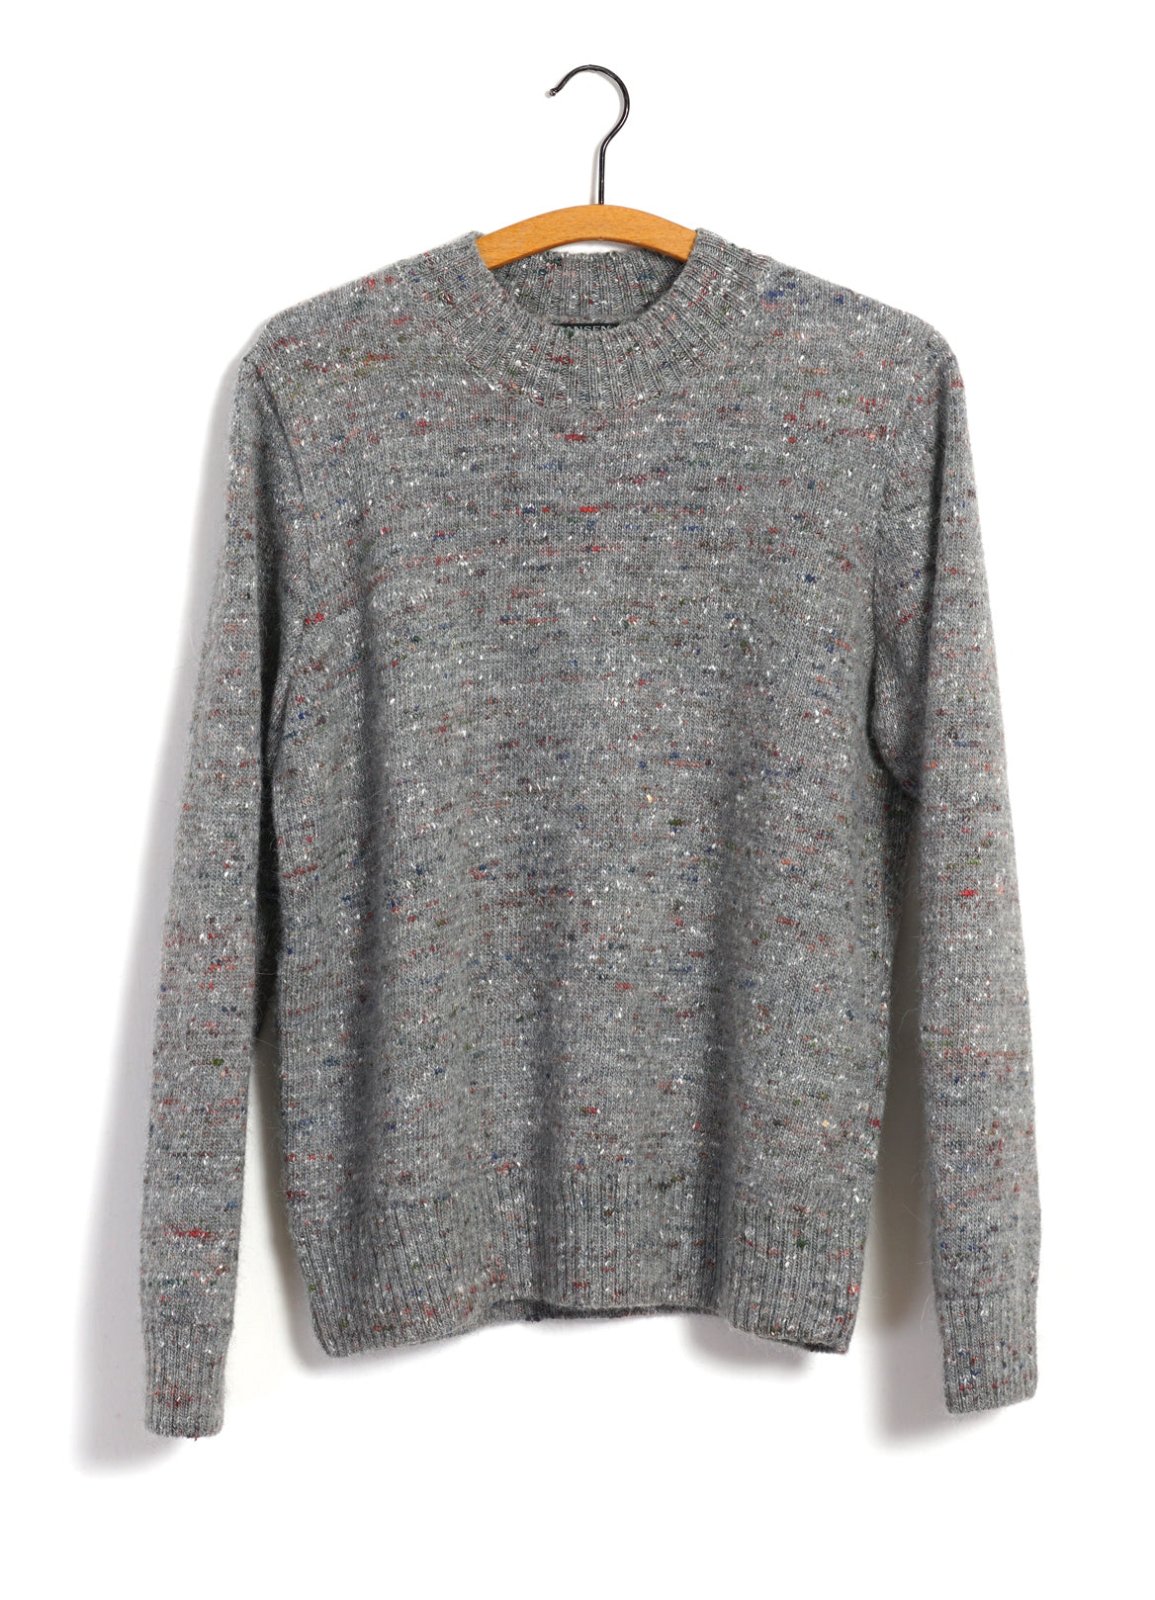 HANSEN GARMENTS - EIVIND | Crew Neck Rib Sweater | Donegal Grey - HANSEN Garments